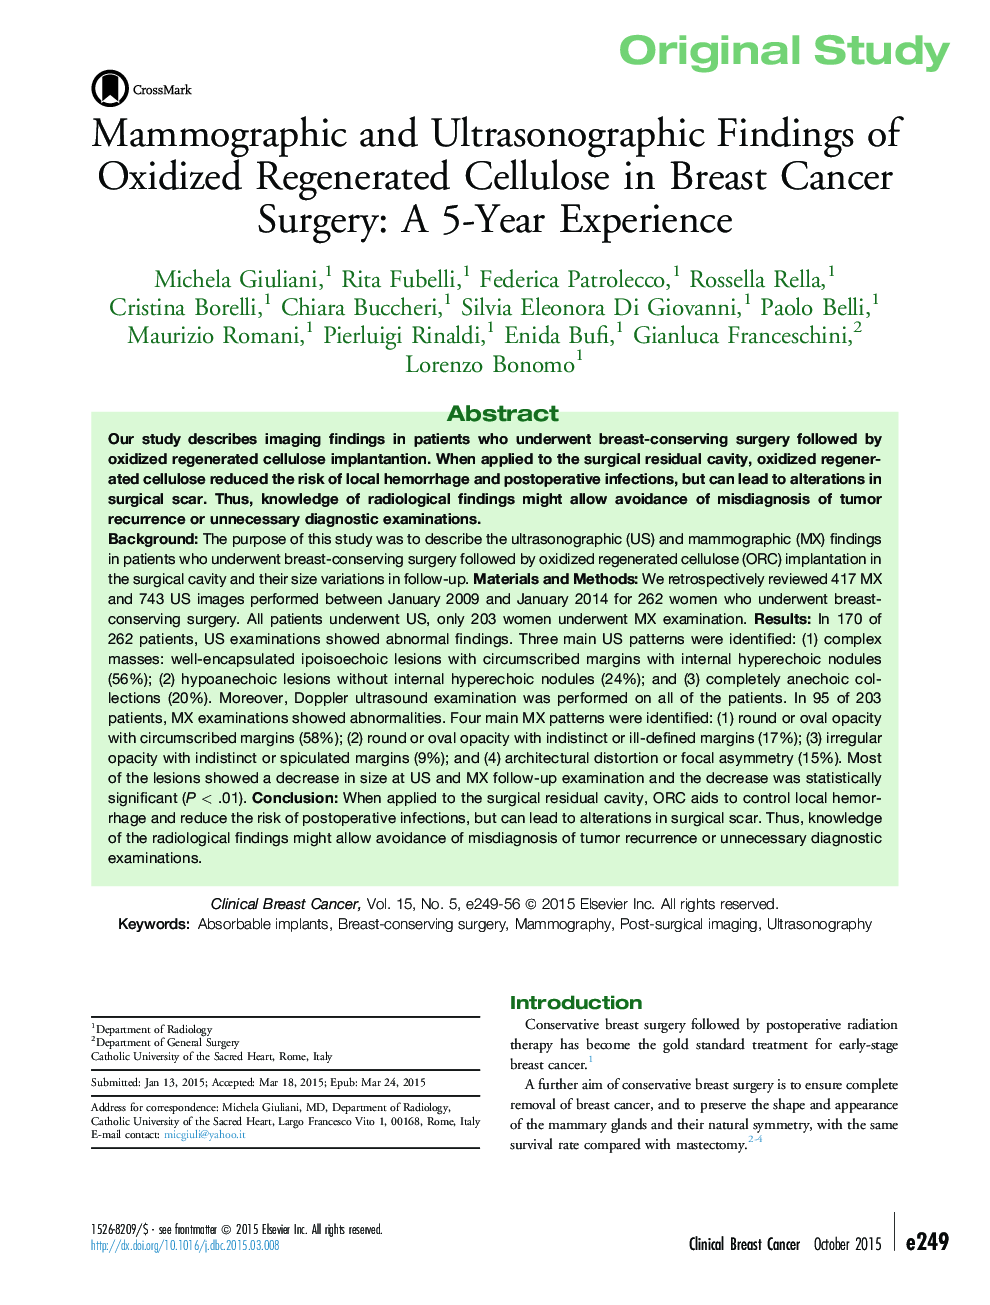 یافته های ماموگرافی و التراسونوگرافی سلولز بازسازی اکسید شده در جراحی سرطان پستان: یک تجربه 5 ساله 